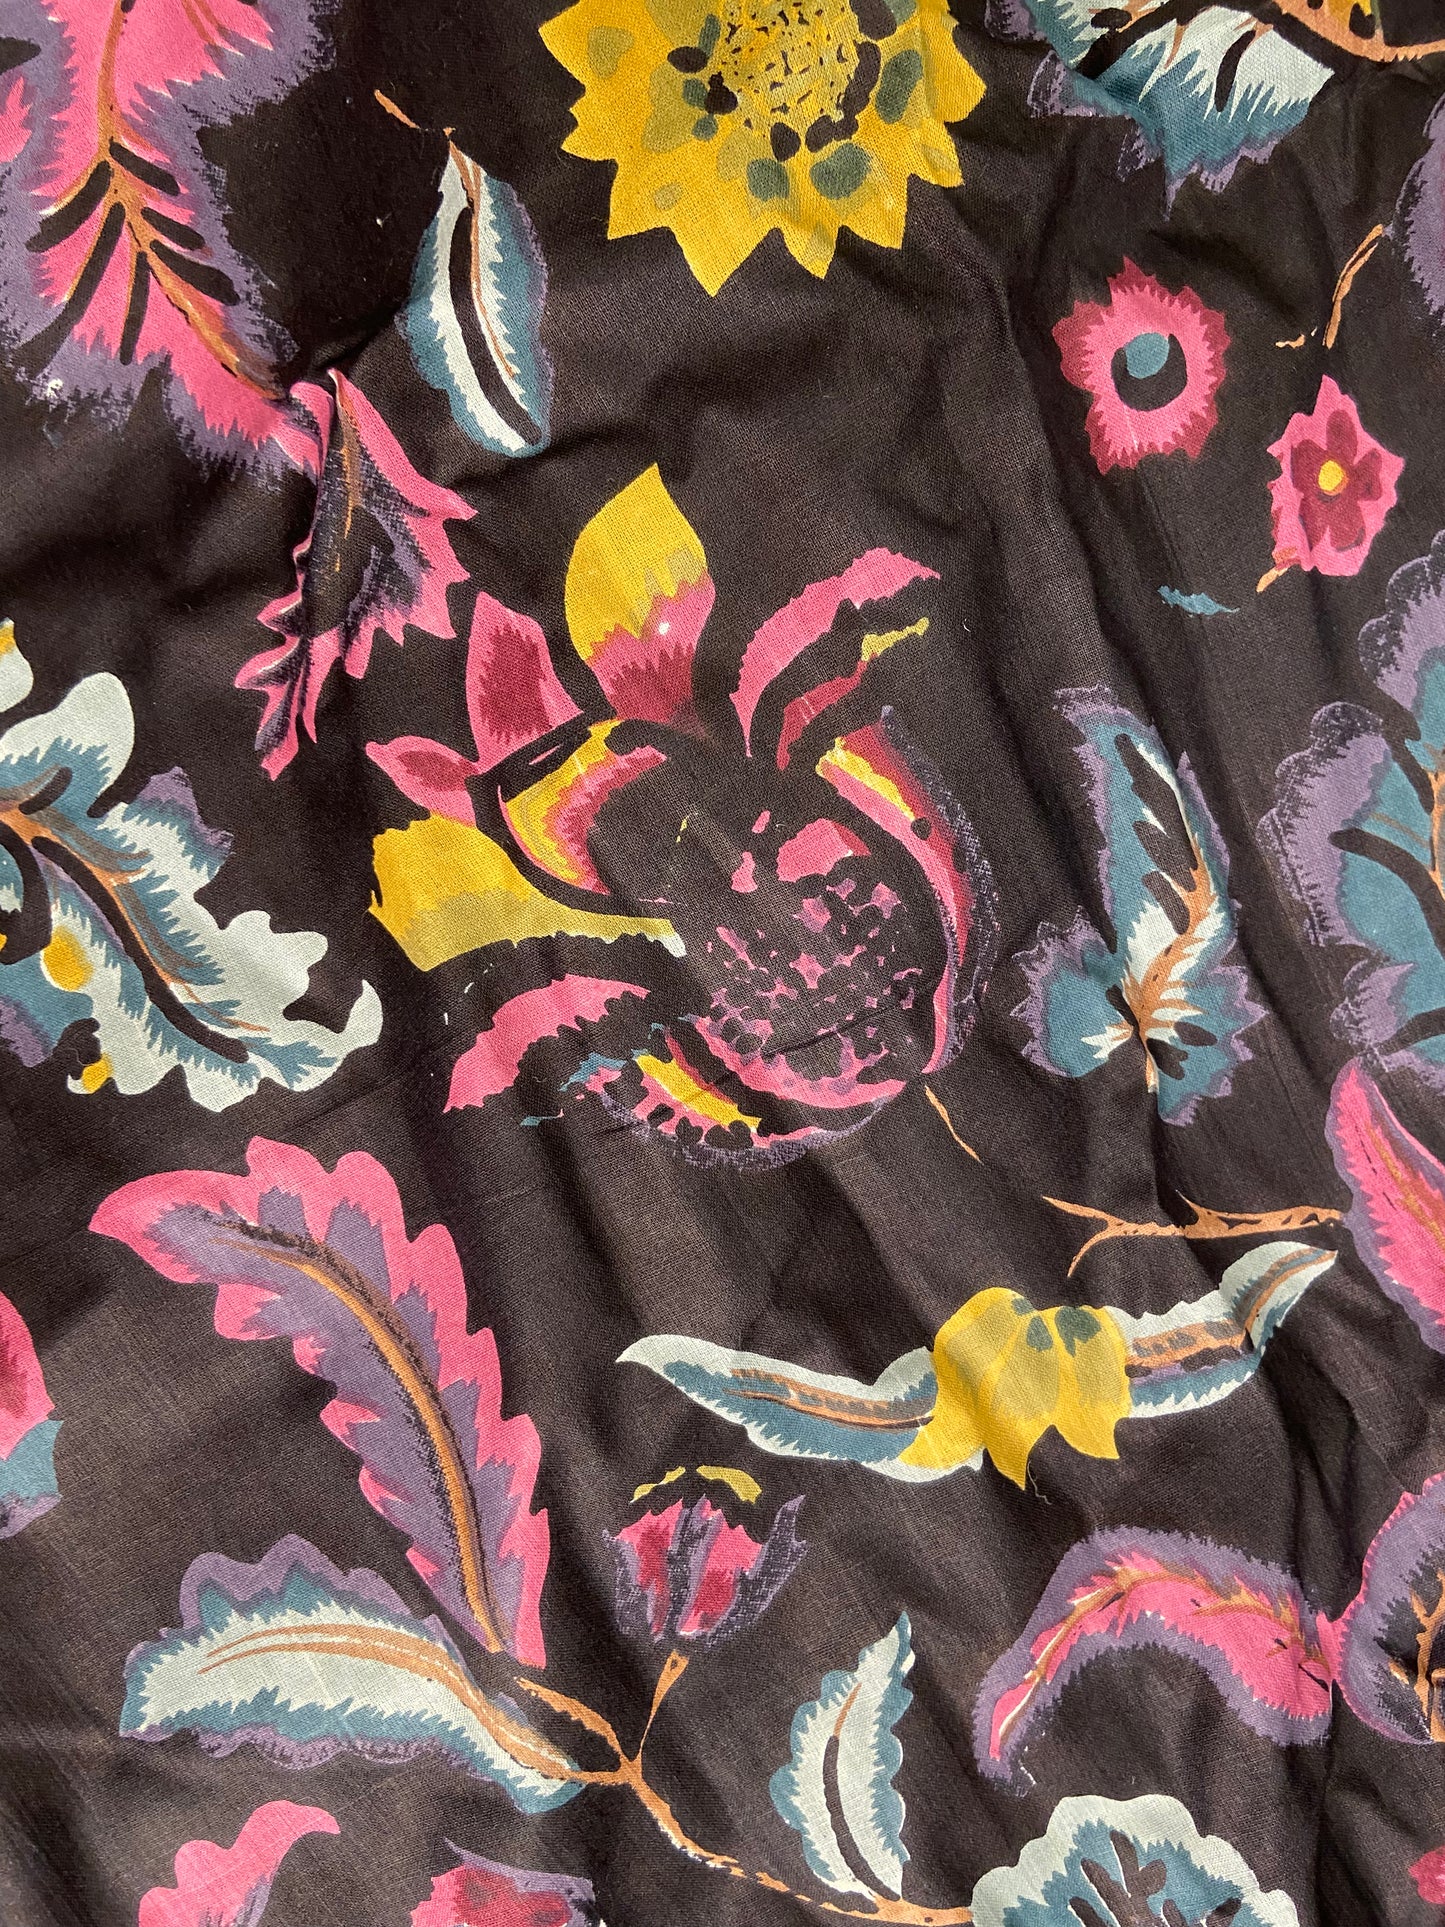 Black Floral Print Cotton Cloth